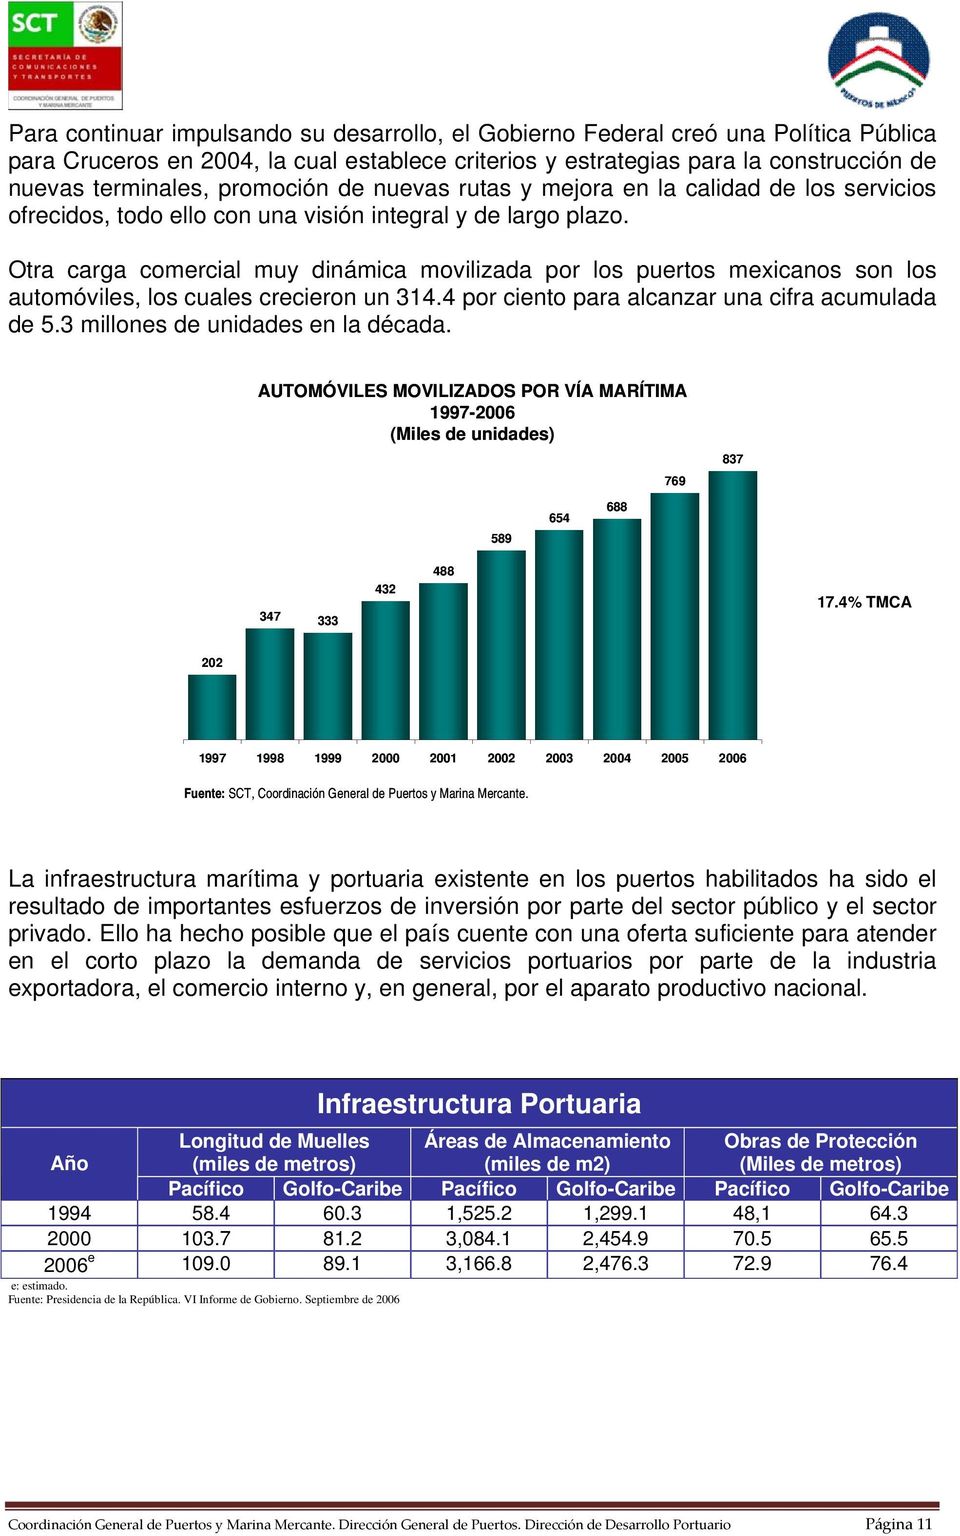 Otra carga comercial muy dinámica movilizada por los puertos mexicanos son los automóviles, los cuales crecieron un 314.4 por ciento para alcanzar una cifra acumulada de 5.